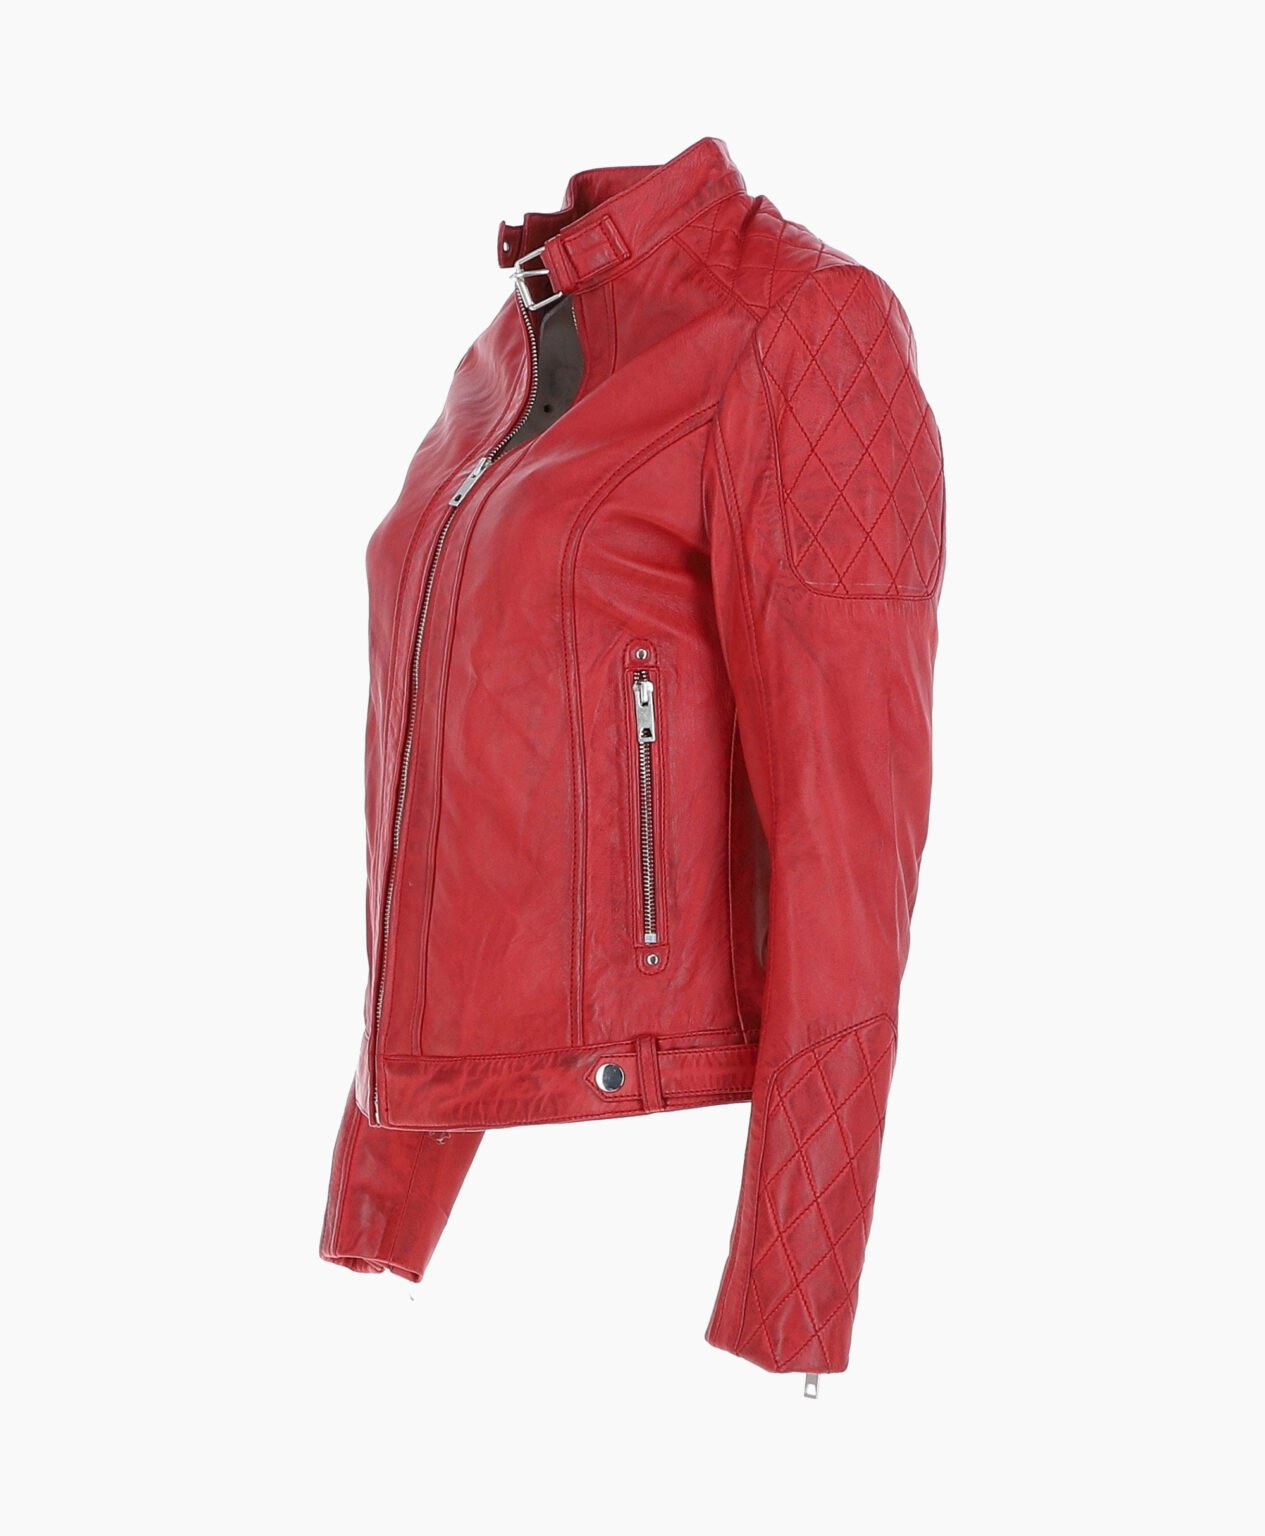 vogue-jacket-leather-jacket-red-malibu-image201